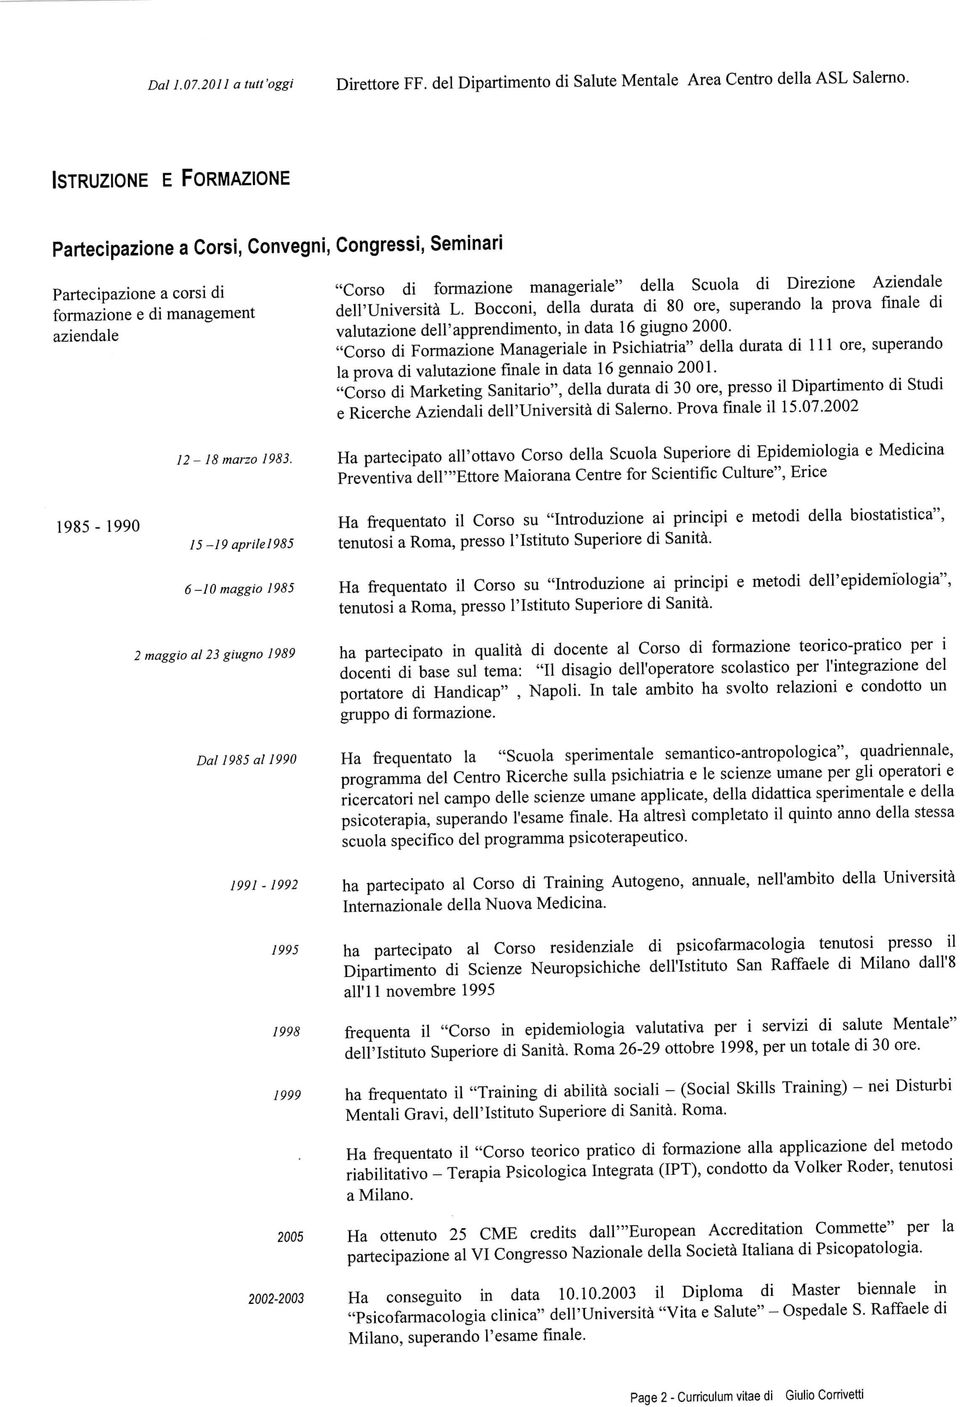 Bocconi, della durata di 80 ore, superando la prova finale di valutazione dell'apprendimento, in data 16 giugno 2000.